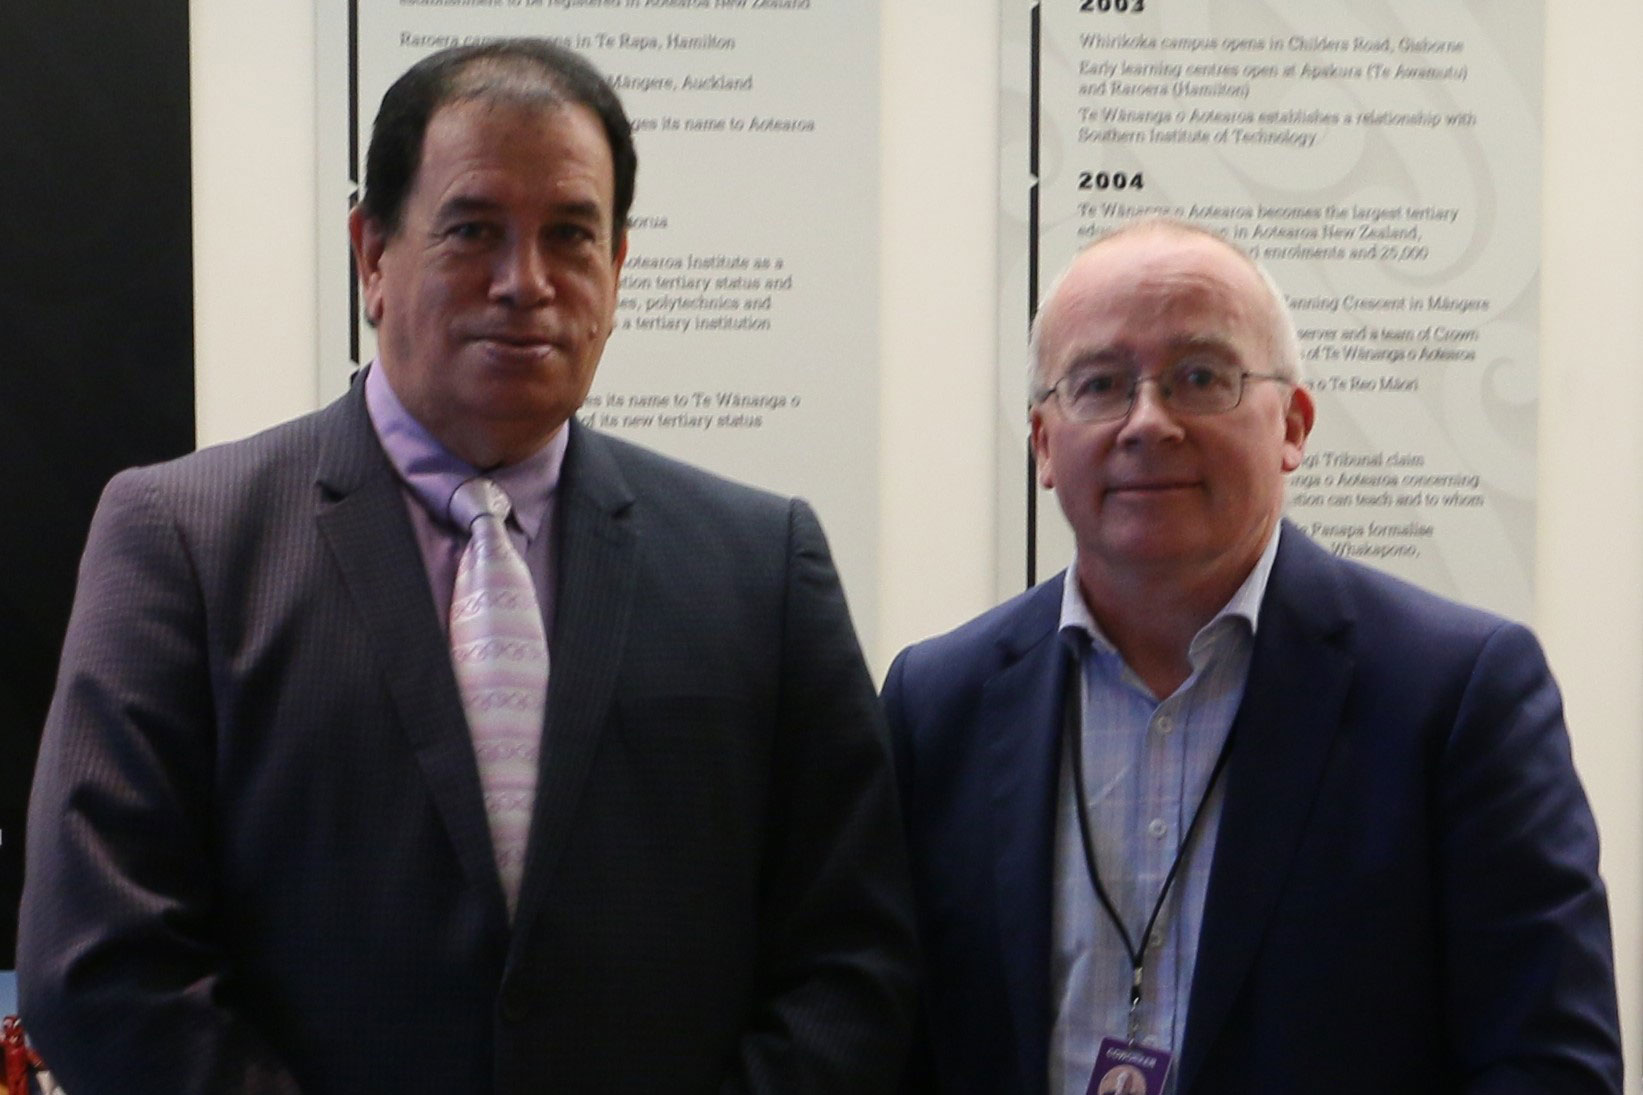 Te Wānanga o Aotearoa acting chief executive Nepia Winiata and Te Pūkenga chief executive Stephen Town following the signing of the memorandum of understanding